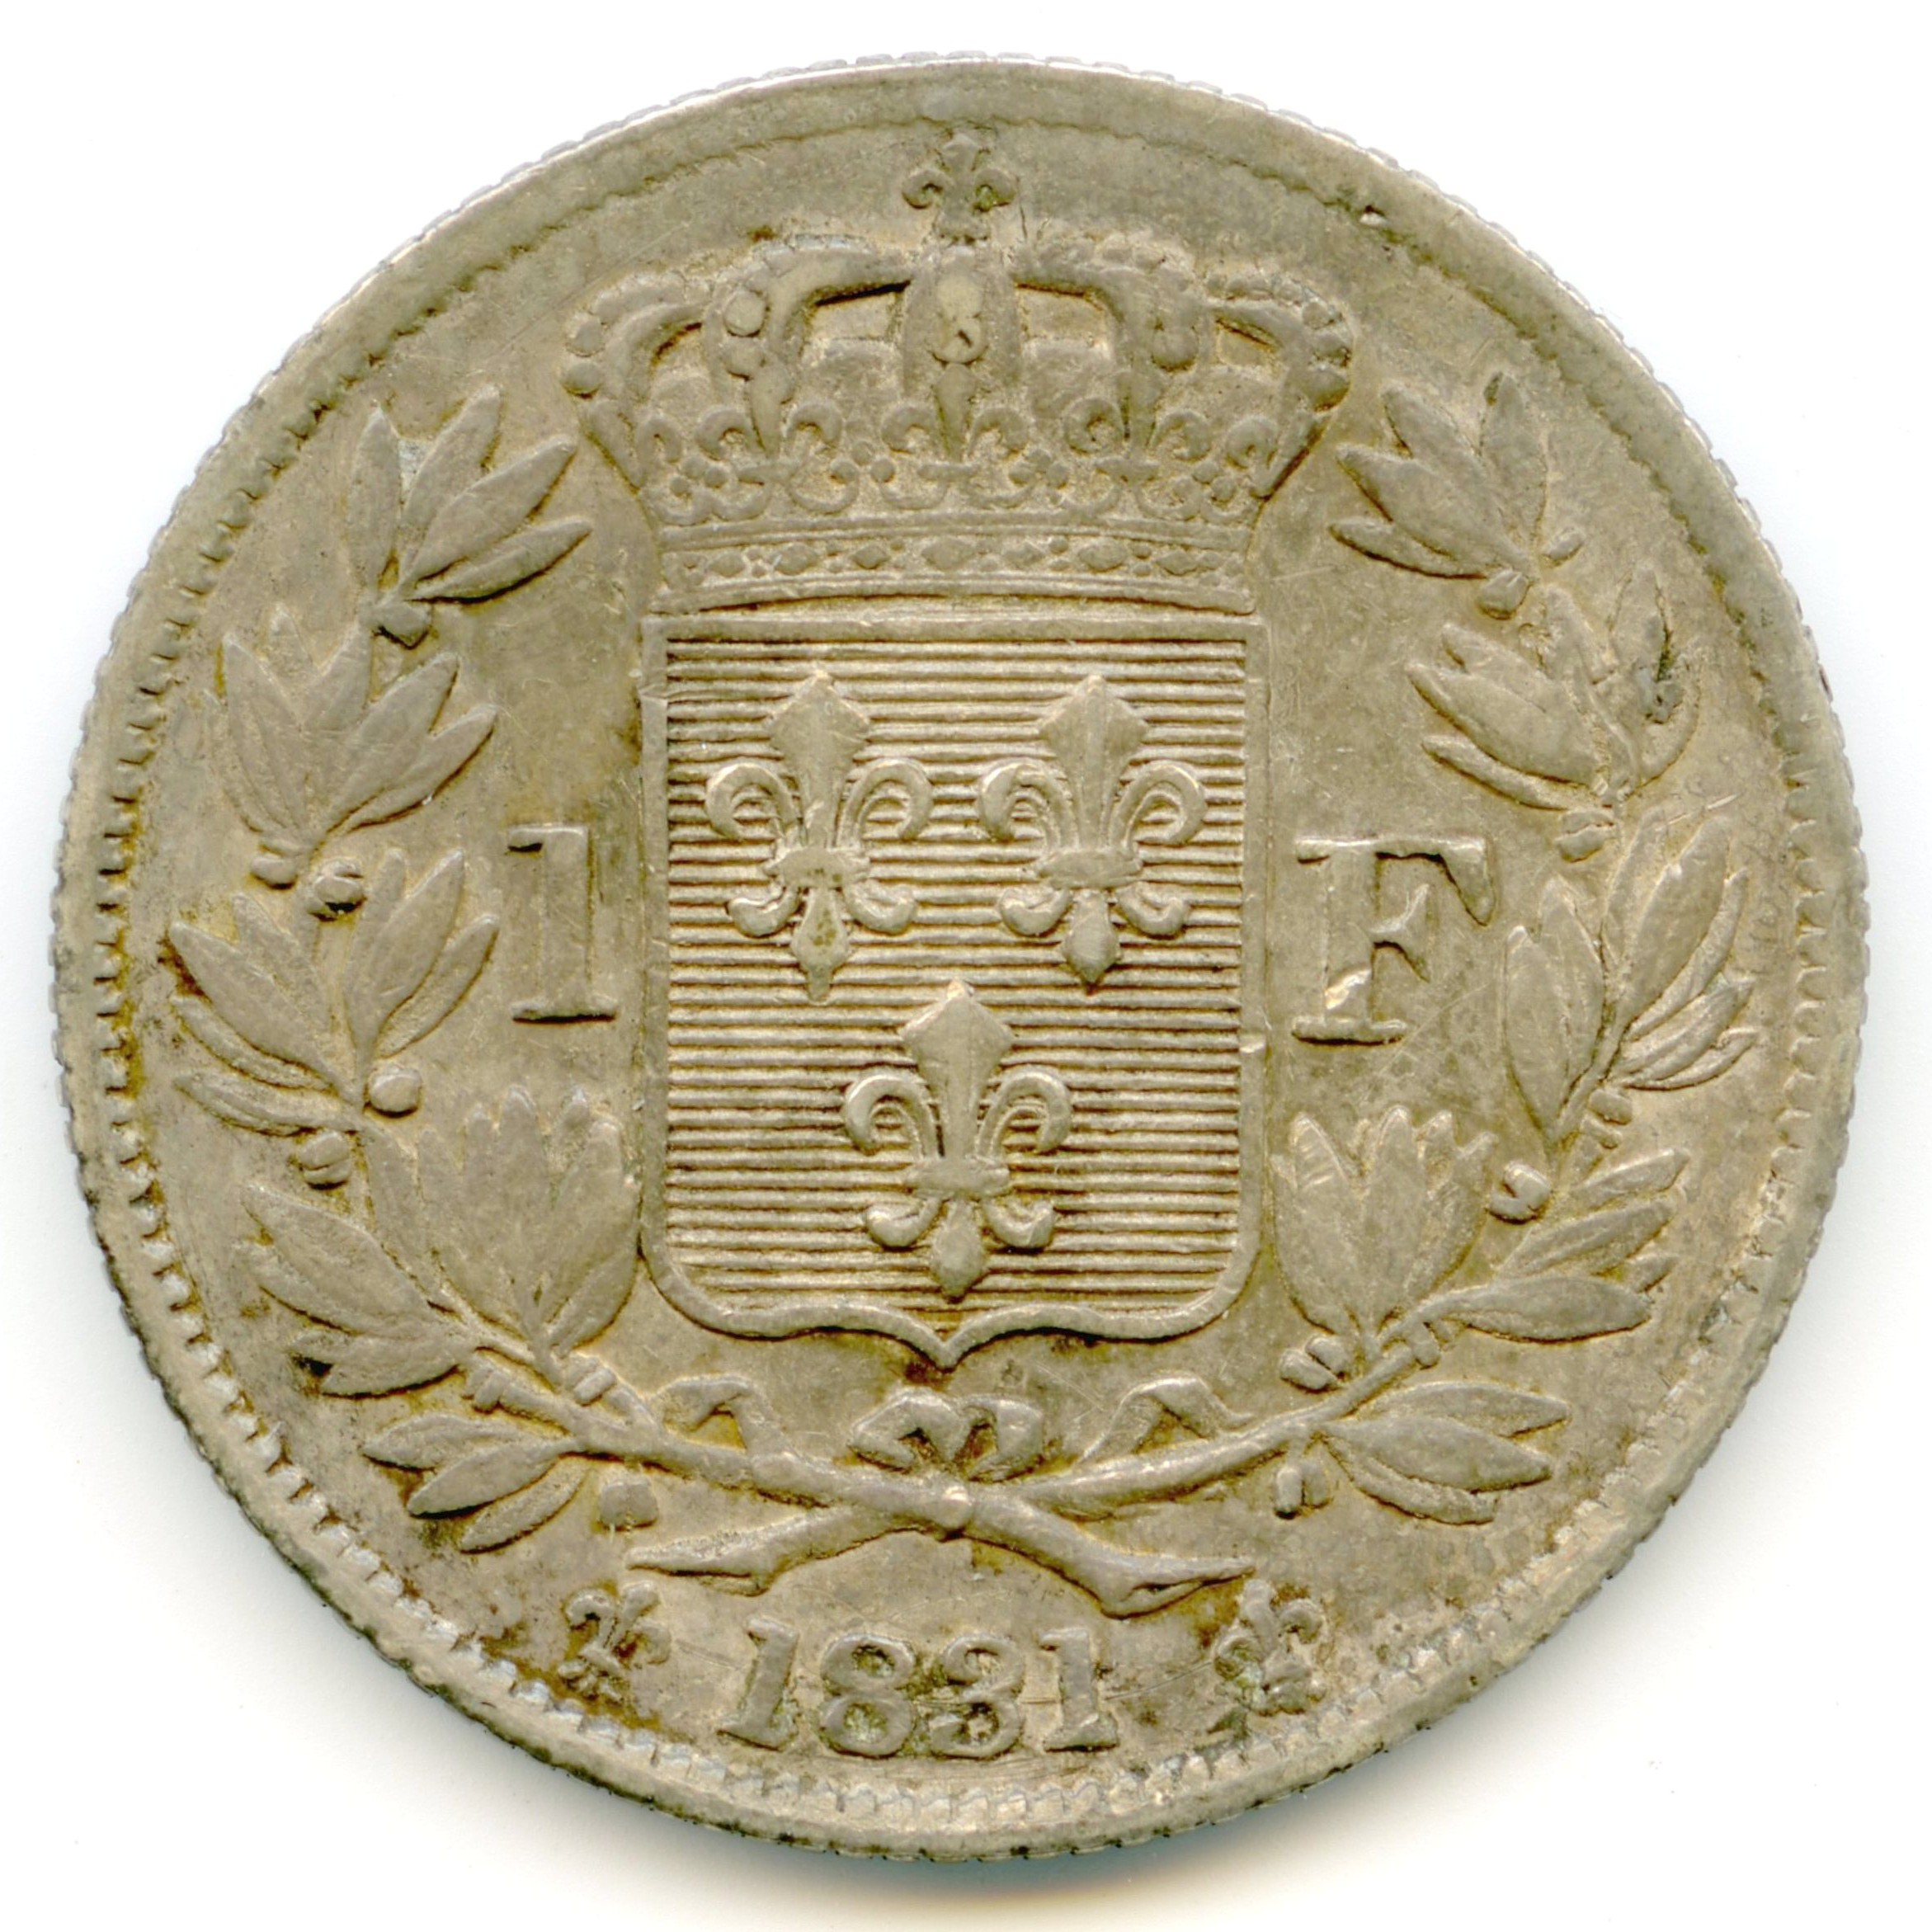 Henri V - 1 Franc - 1831 revers